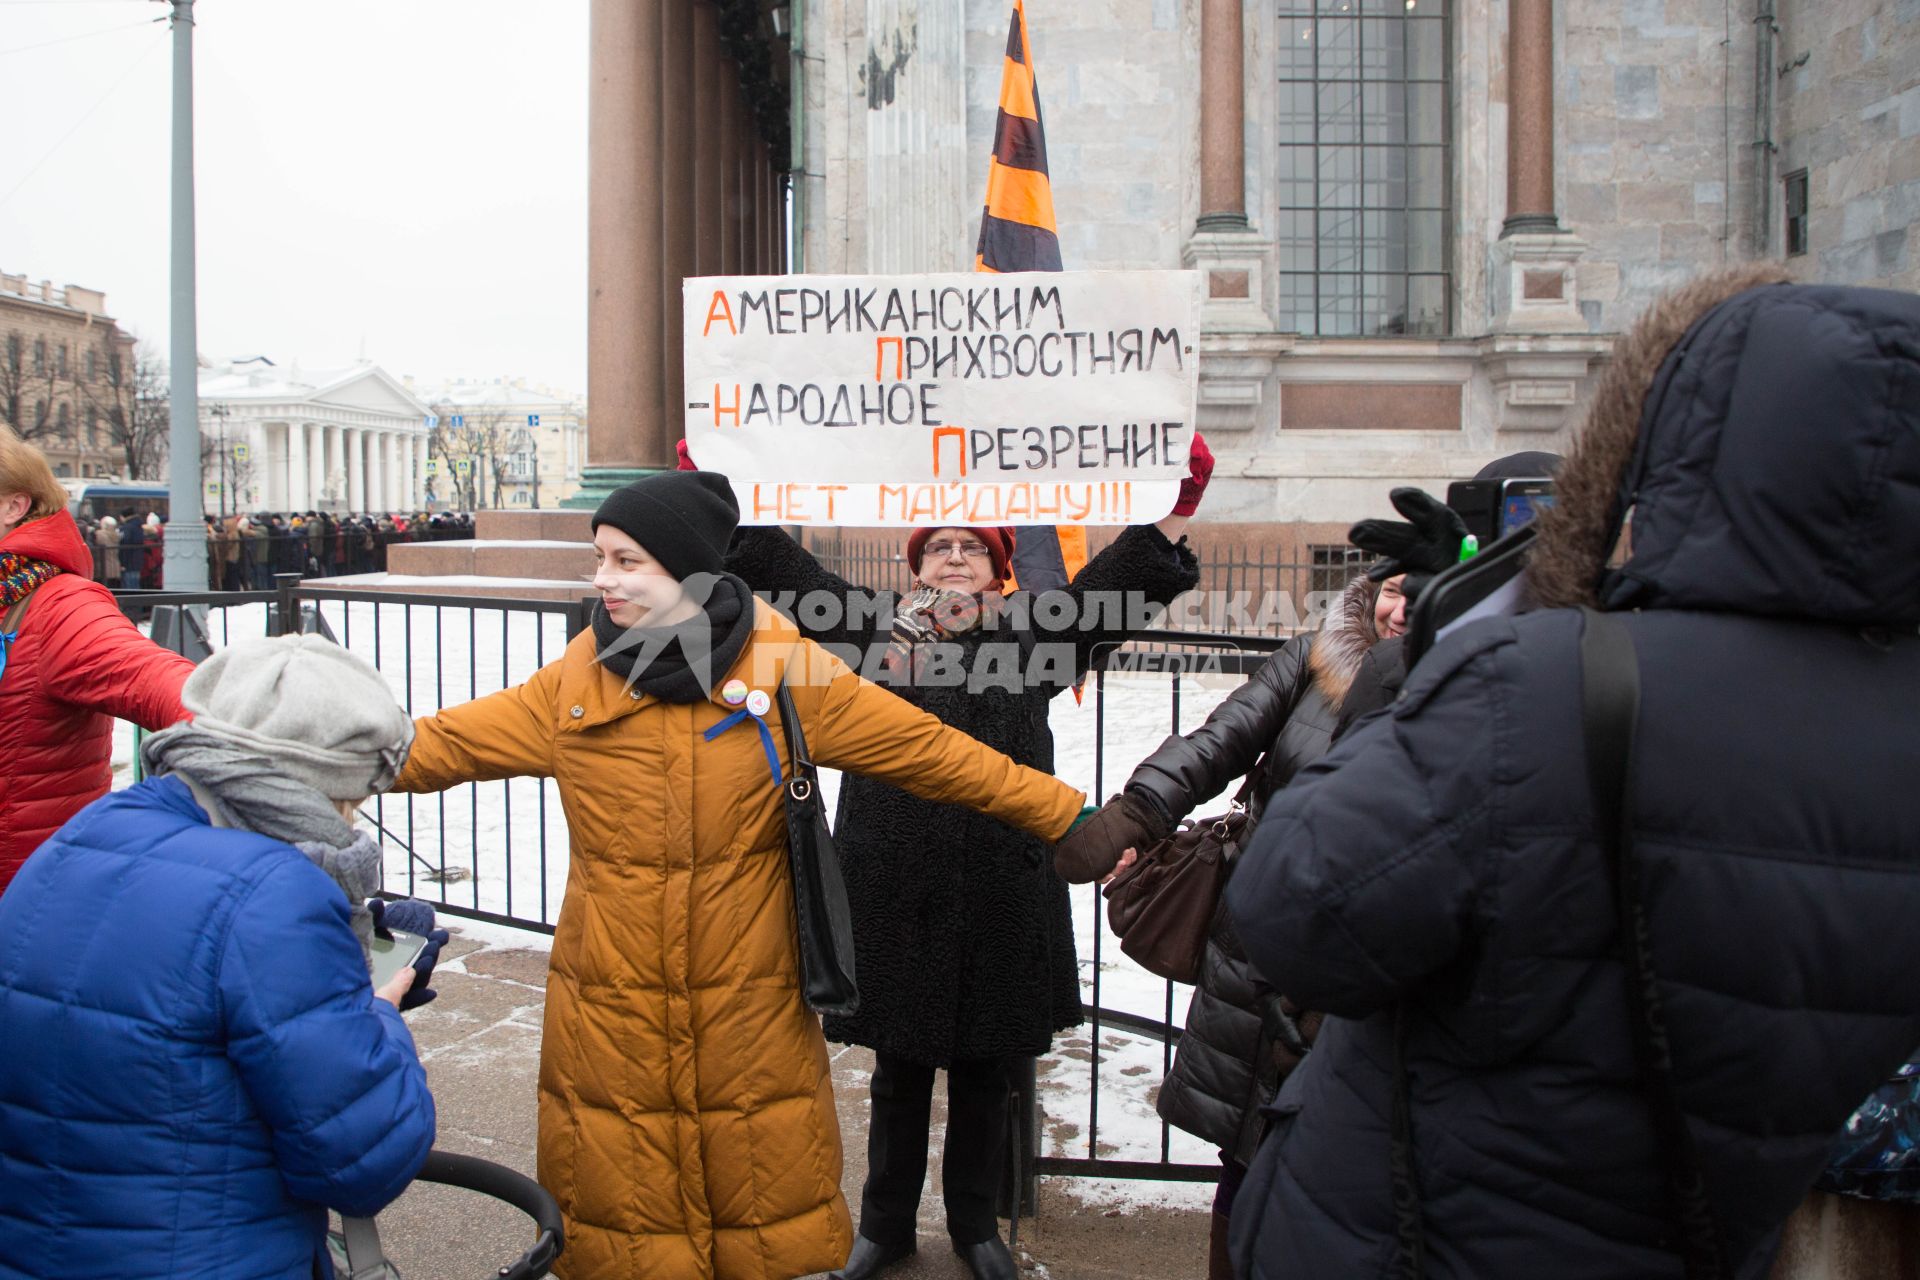 Санкт-Петербург. Митинг противников  передачи  Исаакиевского собора православной церкви.